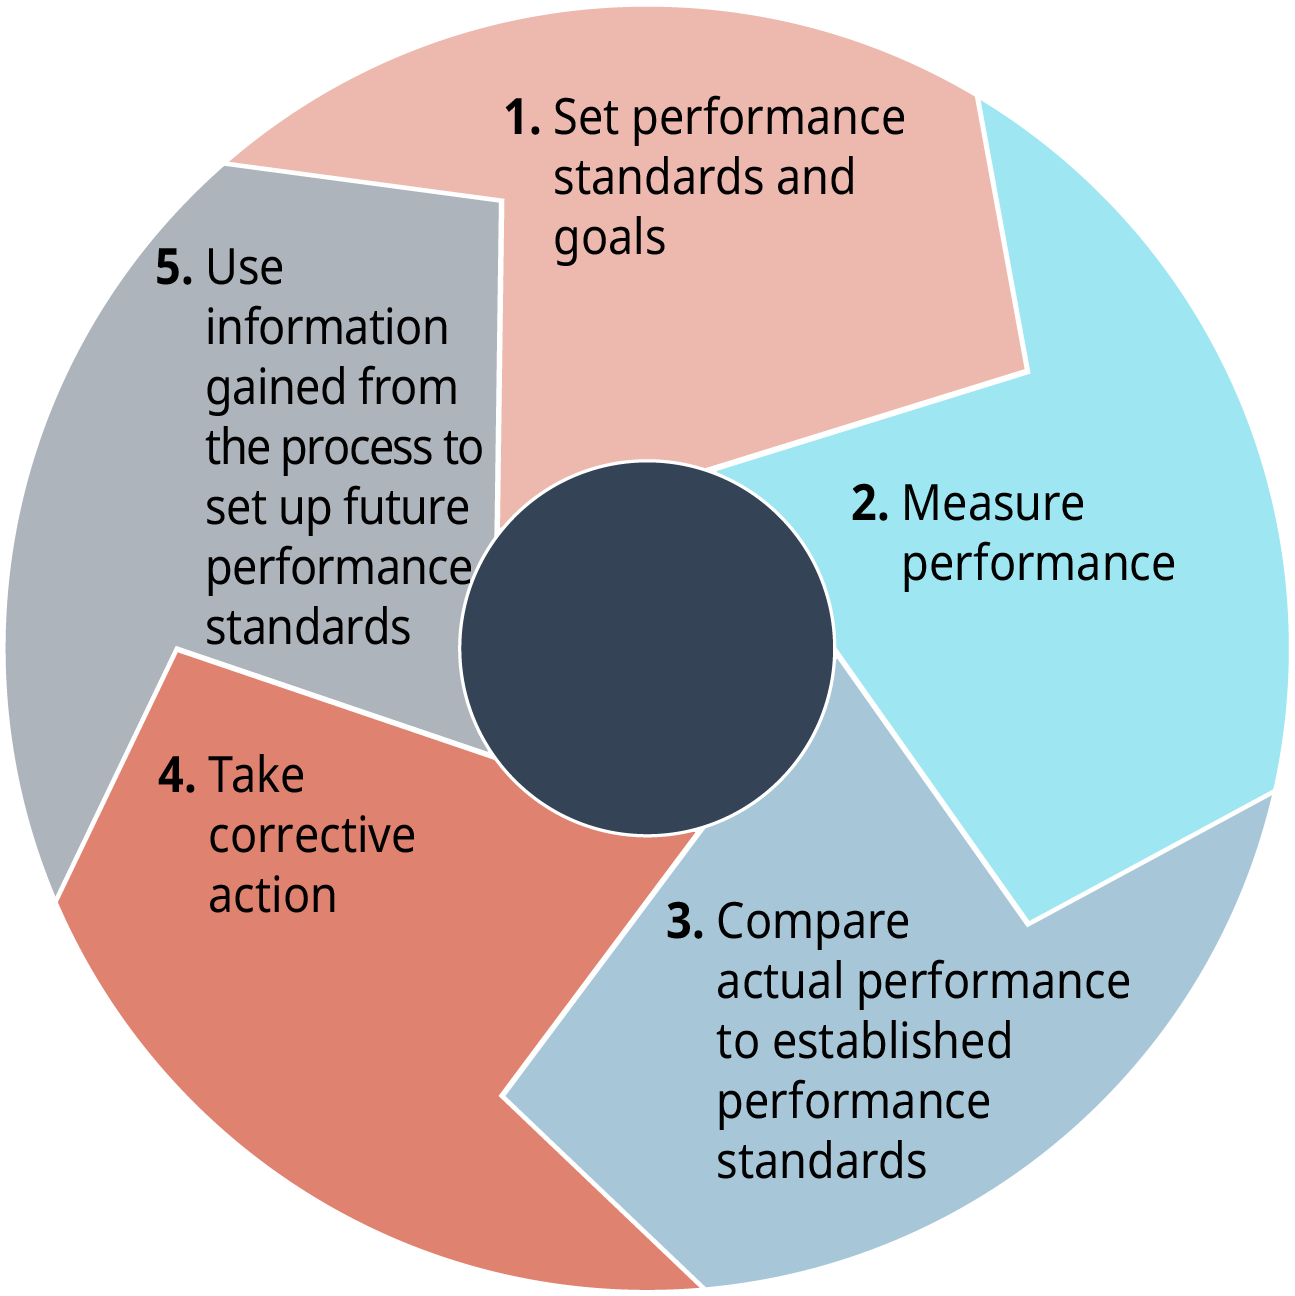 Chaque étape passe à la suivante. L'étape 1 consiste à définir des normes et des objectifs de performance. L'étape 2 consiste à mesurer les performances. L'étape 3 consiste à comparer les performances réelles aux normes de performance établies. L'étape 4 indique de prendre des mesures correctives. L'étape 5 consiste à utiliser les informations obtenues grâce au processus pour établir les futures normes de performance.